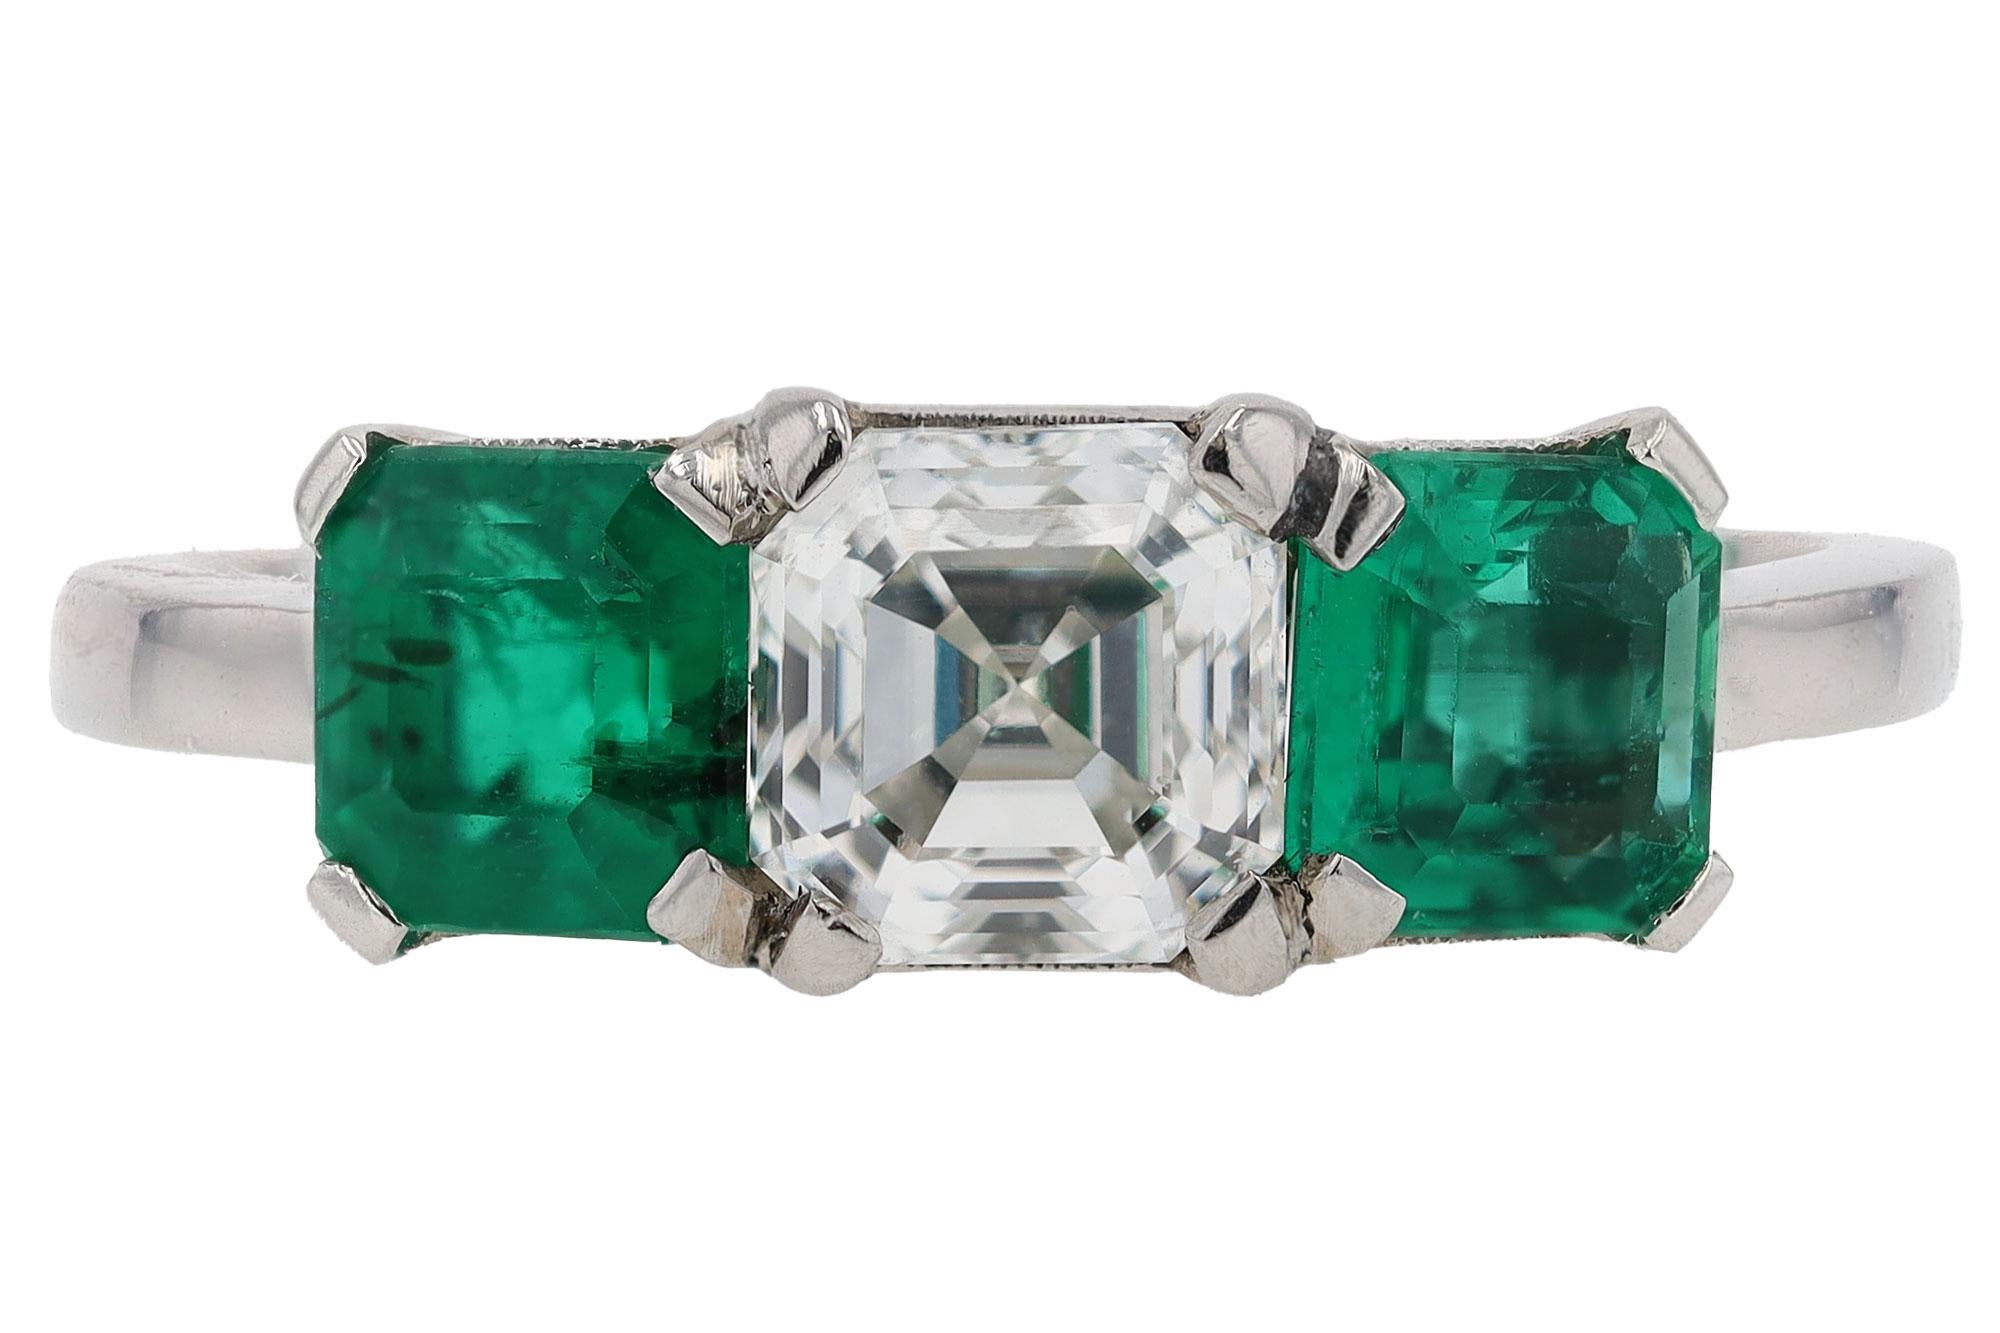 What is an asscher cut emerald?